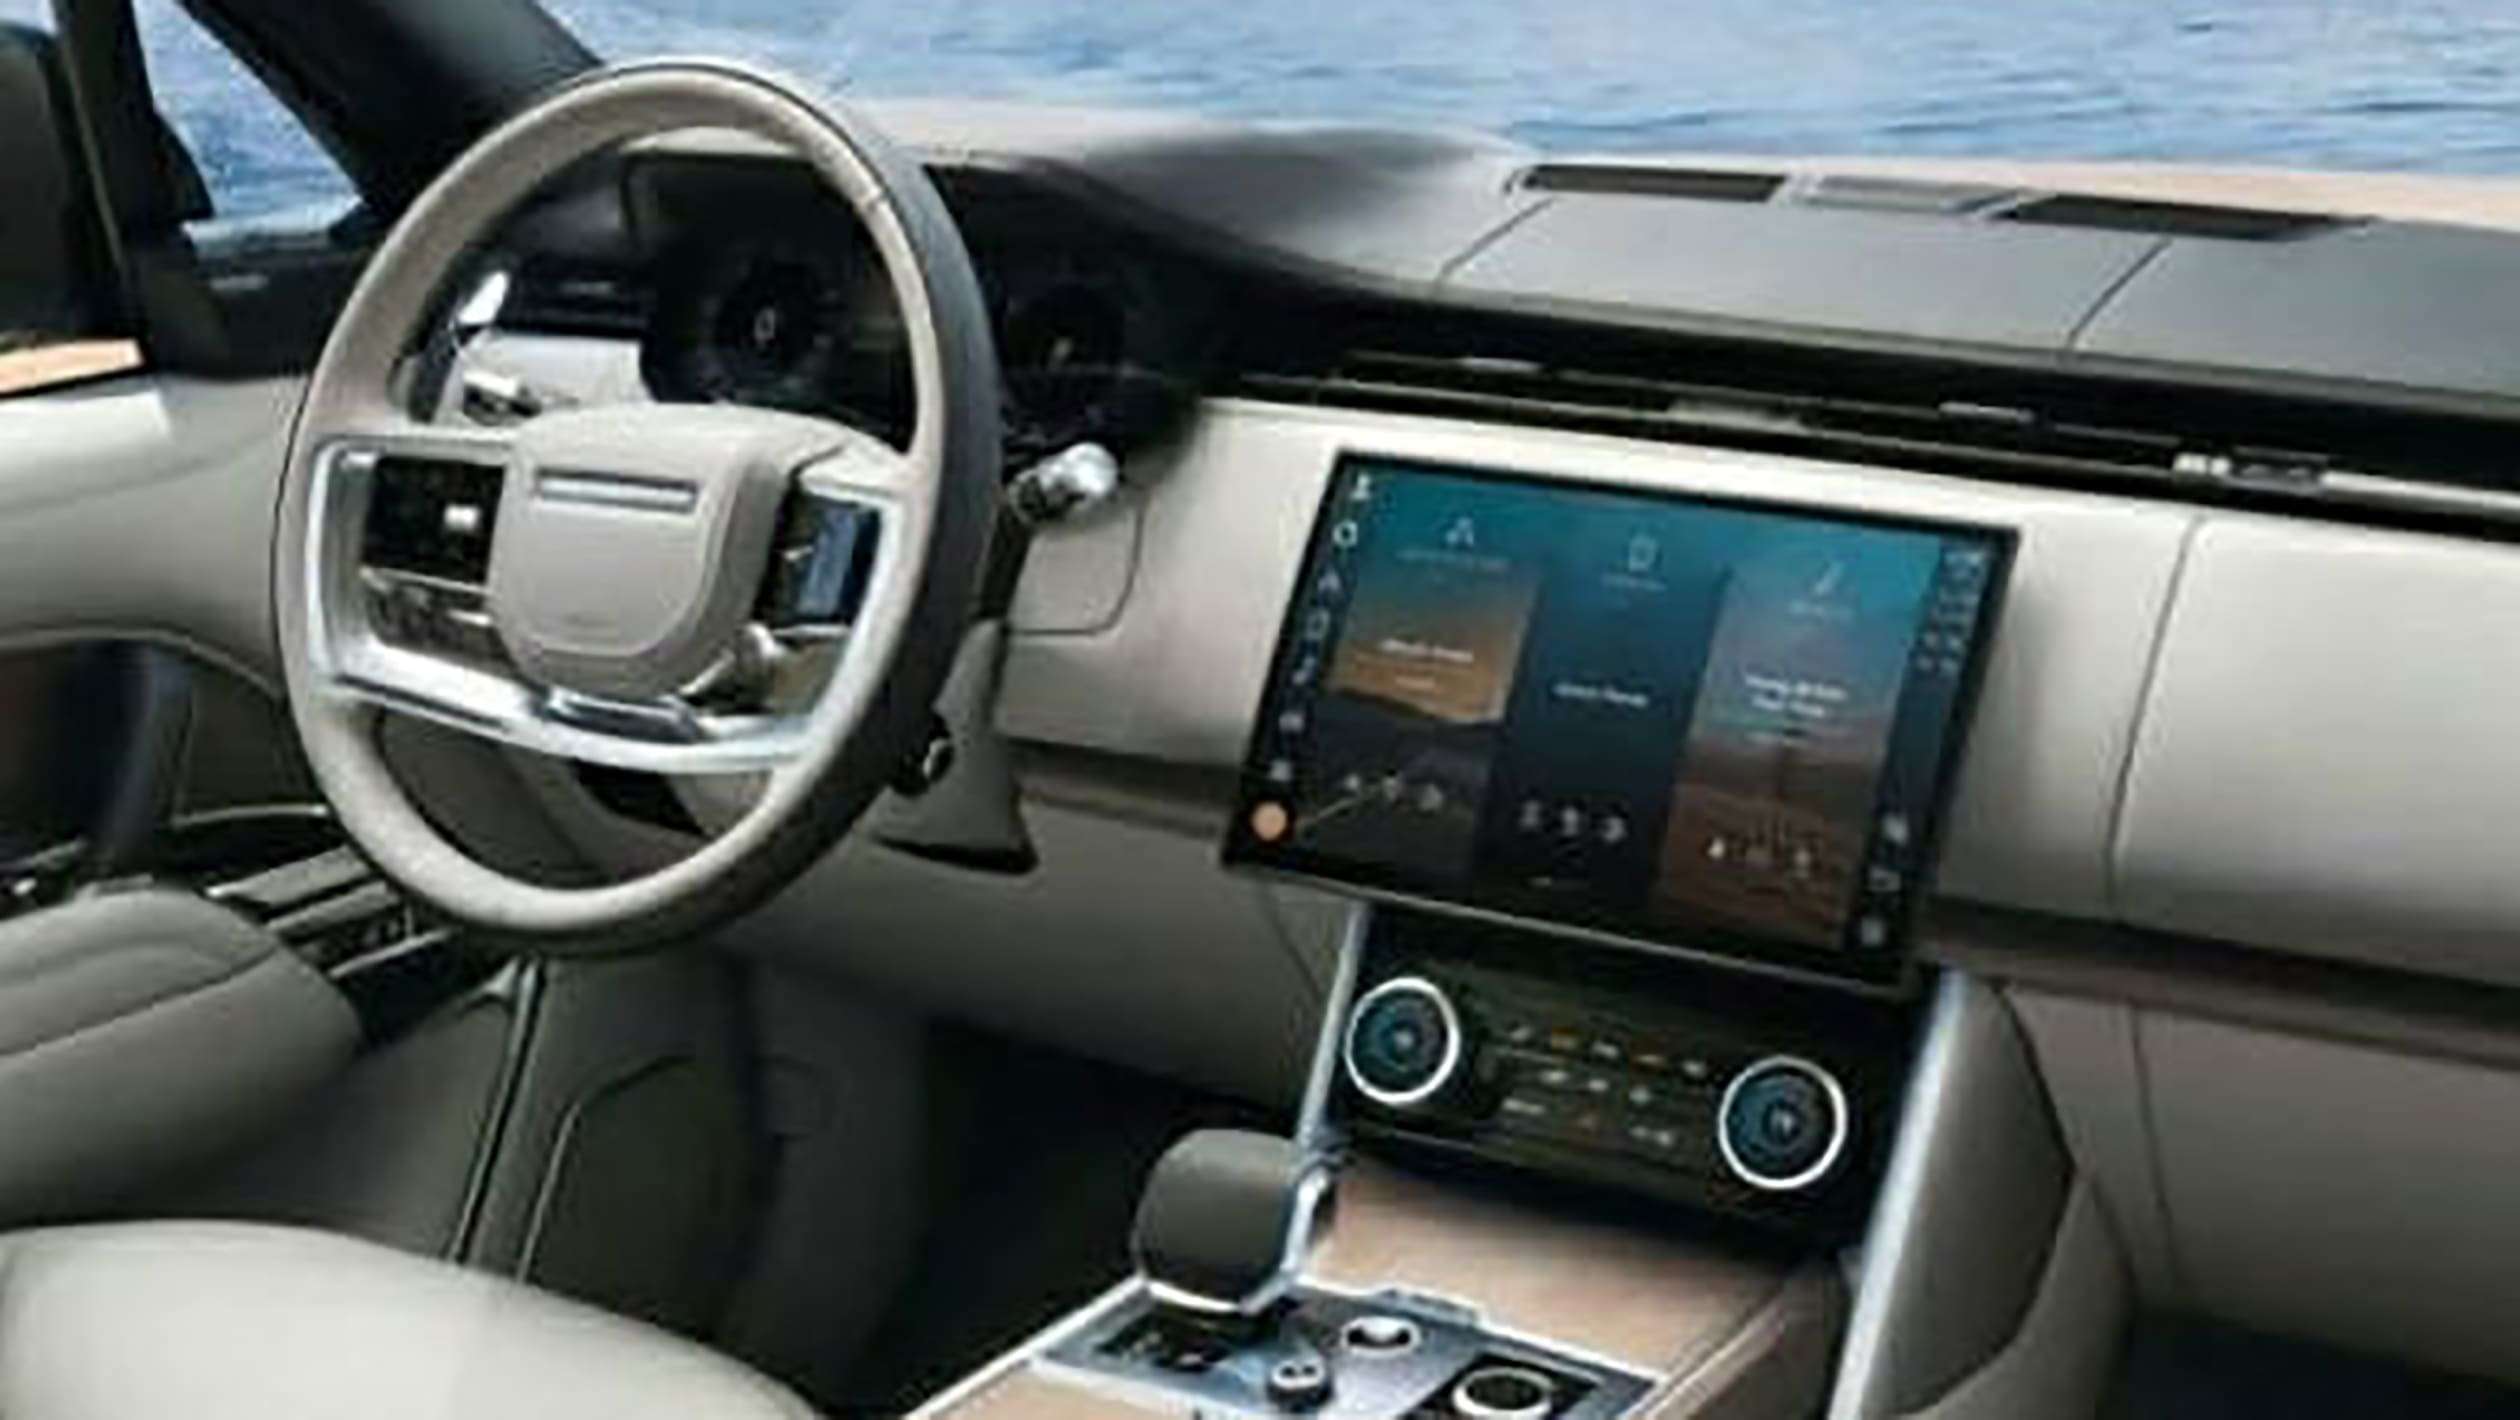 Range Rover leak - interior